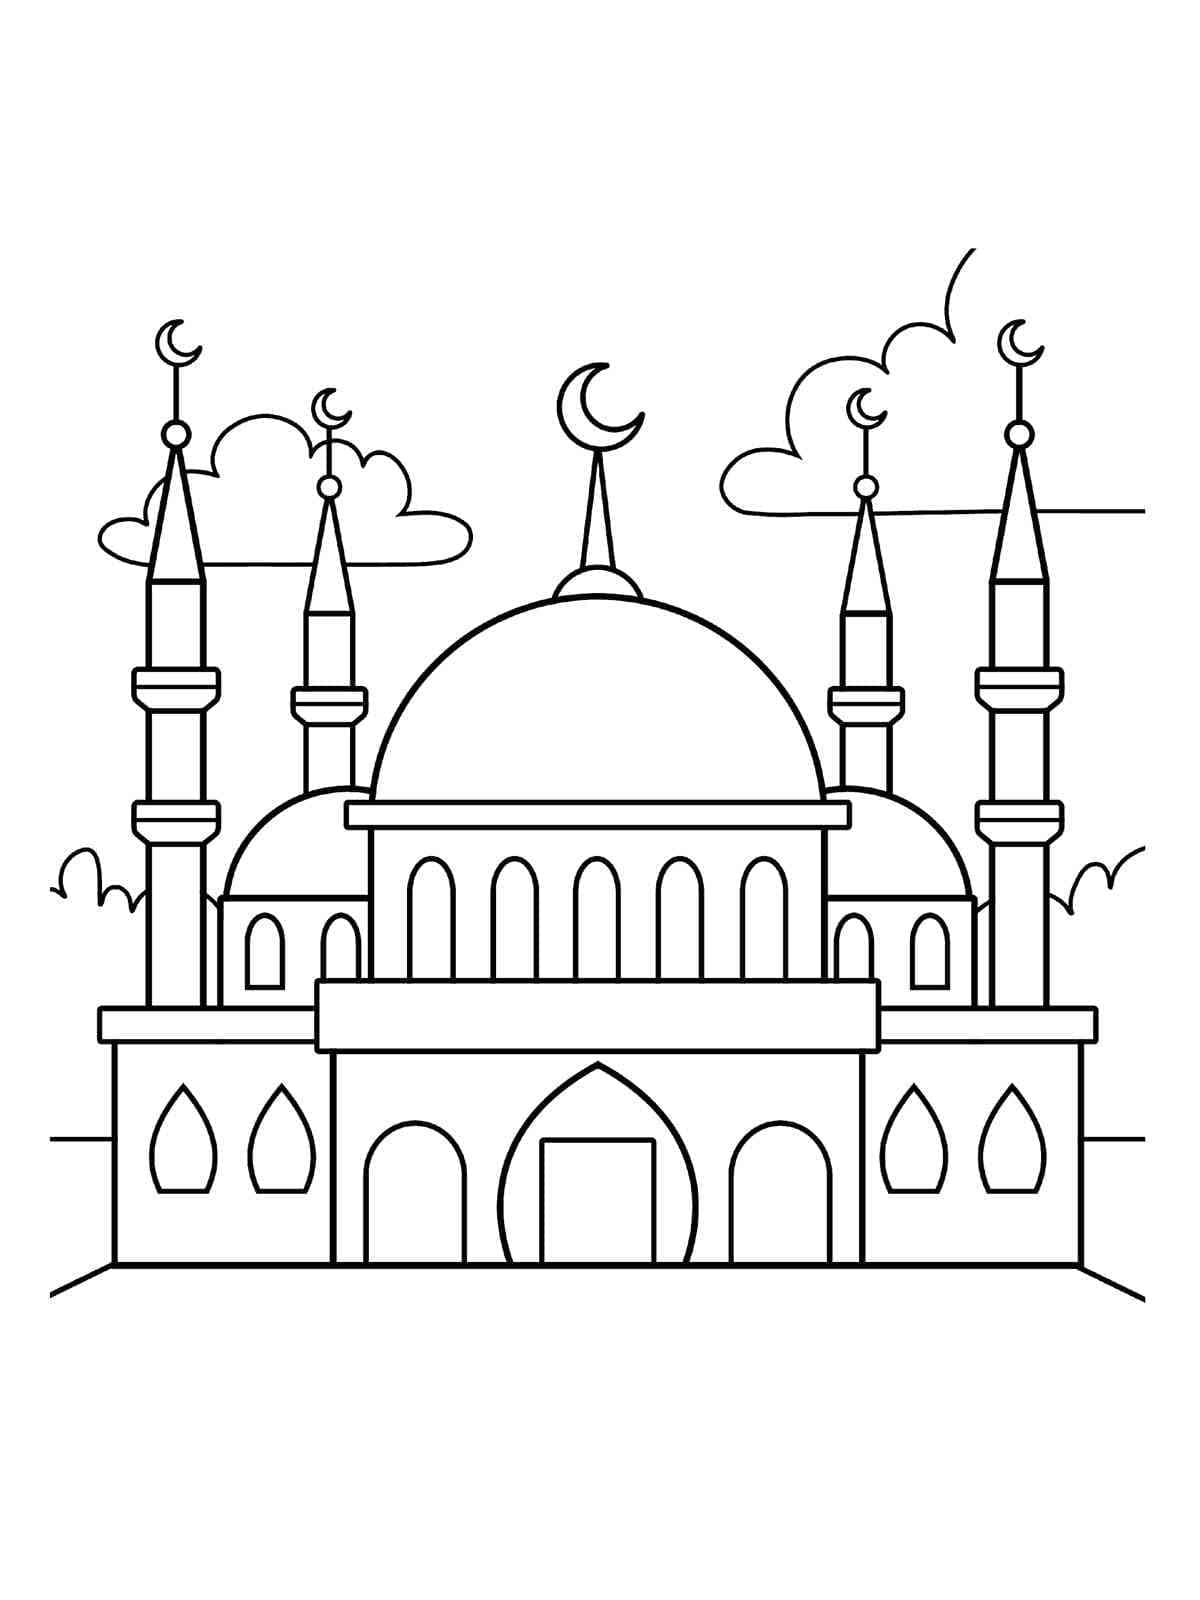 المسجد الرائع 1 تلوين